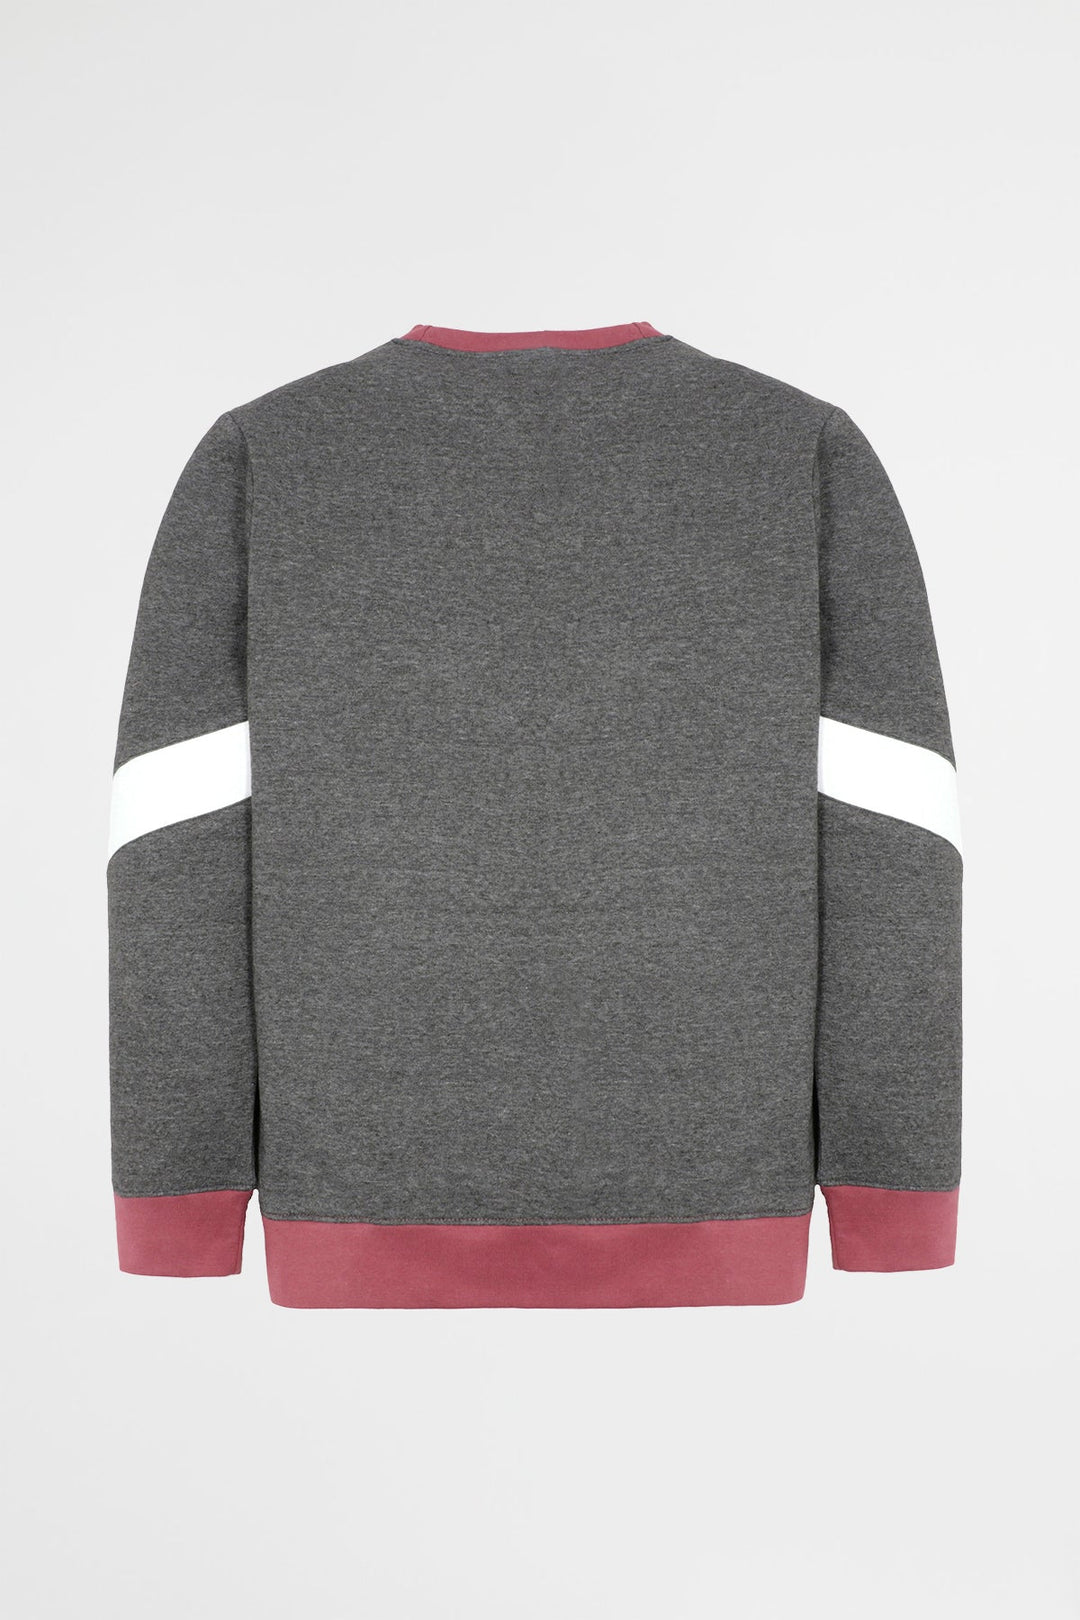 Maroon Color Block Sweatshirt Men Plus Size